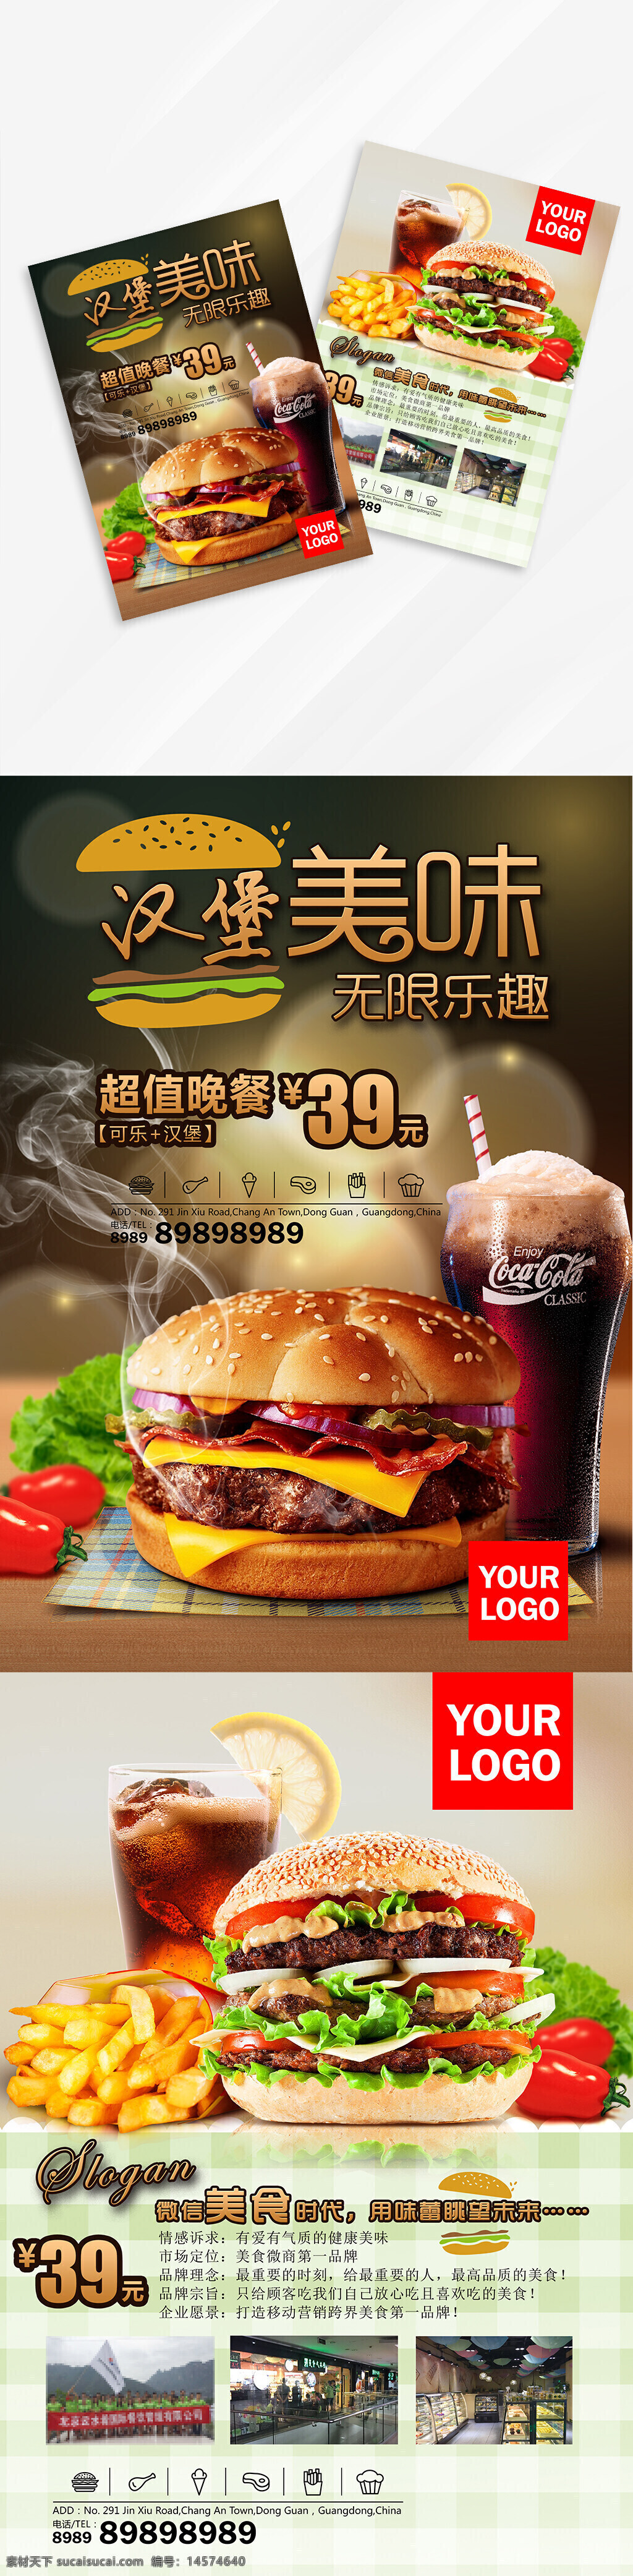 美食 汉堡 饮料 菜单 菜谱 画册 传单 宣传页